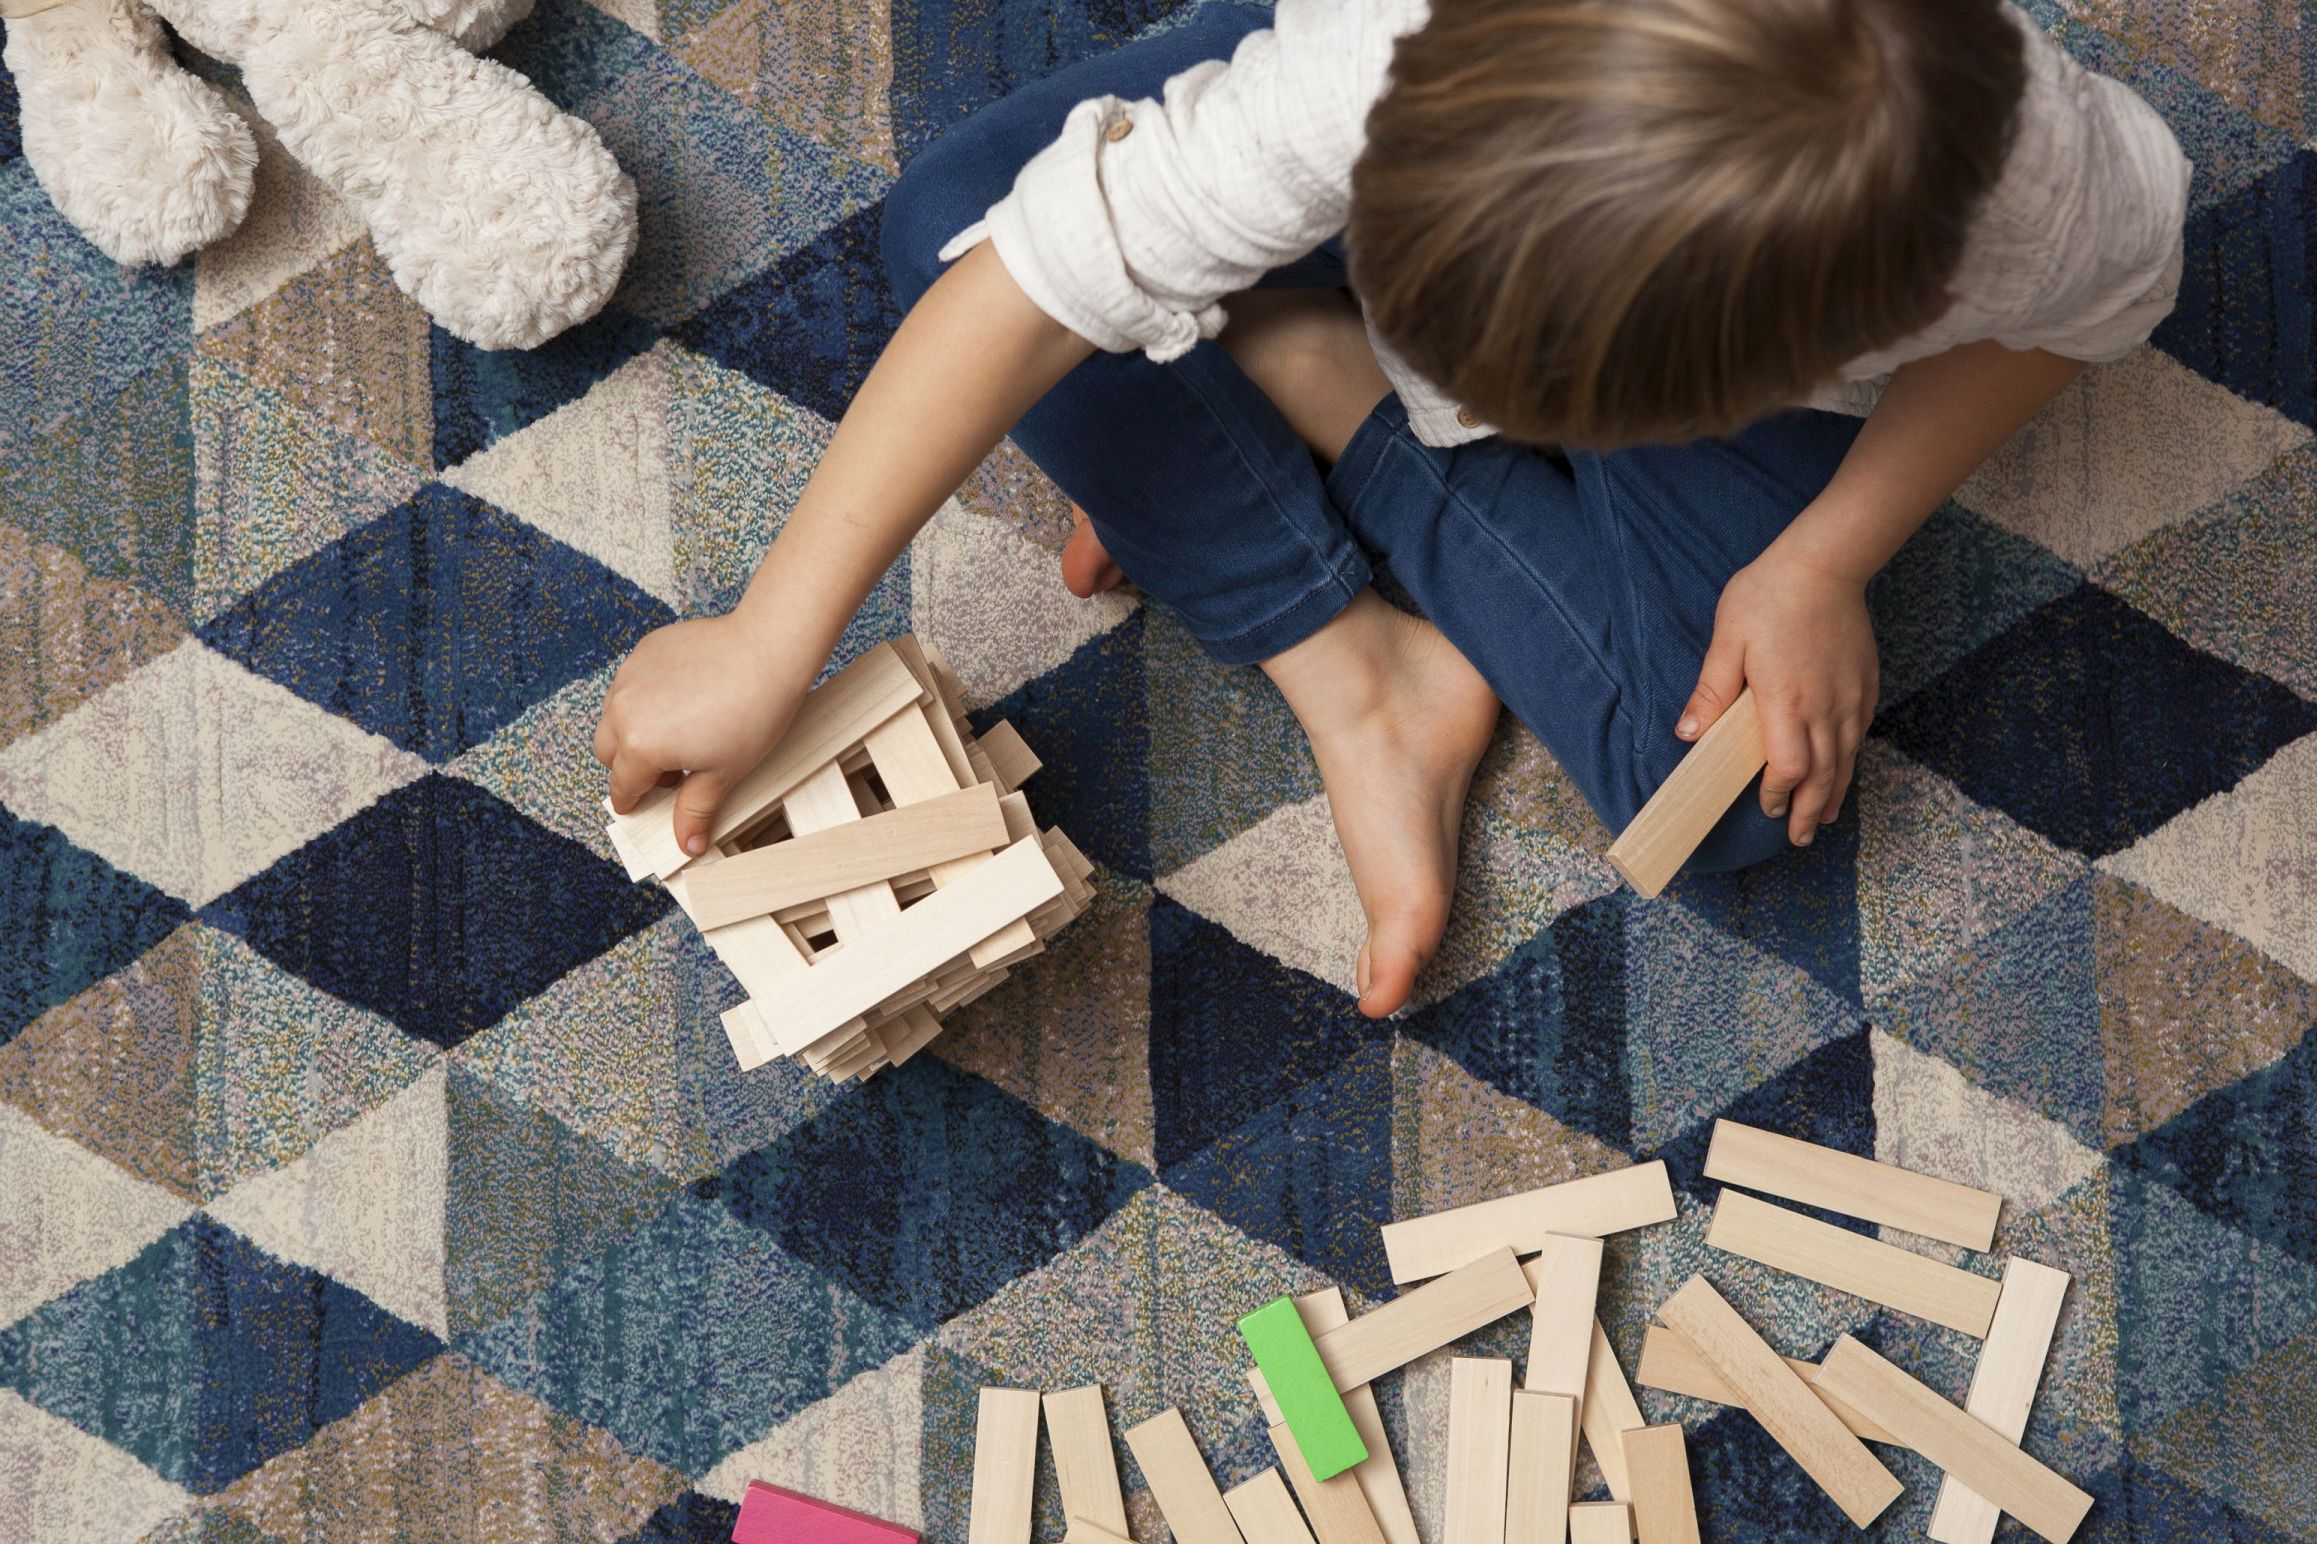 Ekspert podpowiada: Jak wybrać idealny dywan do pokoju dziecka? , ARTE - Podłoga to jedno z tych miejsc, w których dzieci spędzają wyjątkowo dużo czasu. Stanowi ona dla nich nie tylko przestrzeń do zabawy czy odpoczynku, ale też rozwijania swoich pasji a nawet spożywania posiłków. Z tego względu wielu rodziców decyduje się na ułożenie w pokoju swoich pociech dywanu, który stanowi doskonały kompromis między łatwymi w utrzymaniu panelami a miękką i przyjemną w dotyku wykładziną. Jak jednak wybrać idealny produkt, który z jednej strony będzie funkcjonalny i wytrzymały, a z drugiej bezpieczny i wpisujący się w oczekiwania najmłodszych domowników? Ekspert firmy ARTE podpowiada o czym warto pamiętać wybierając dywan do pokoju dziecka.